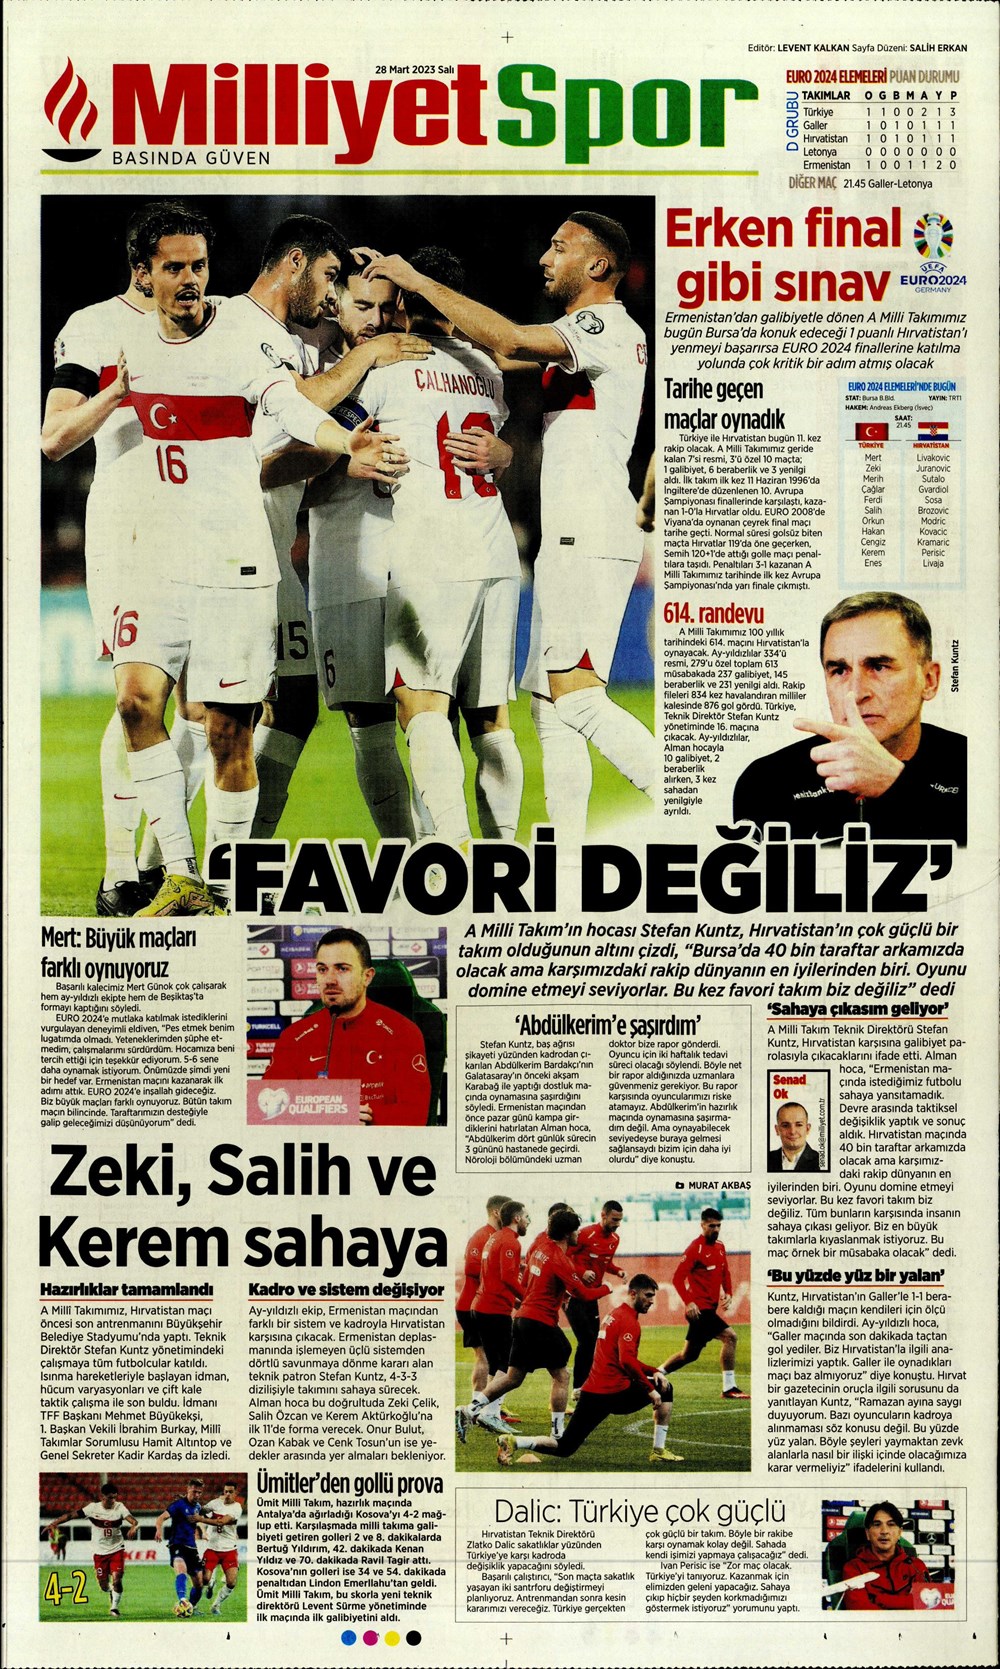 "Vurduğumuz gol olsun" - Sporun manşetleri - 20. Foto